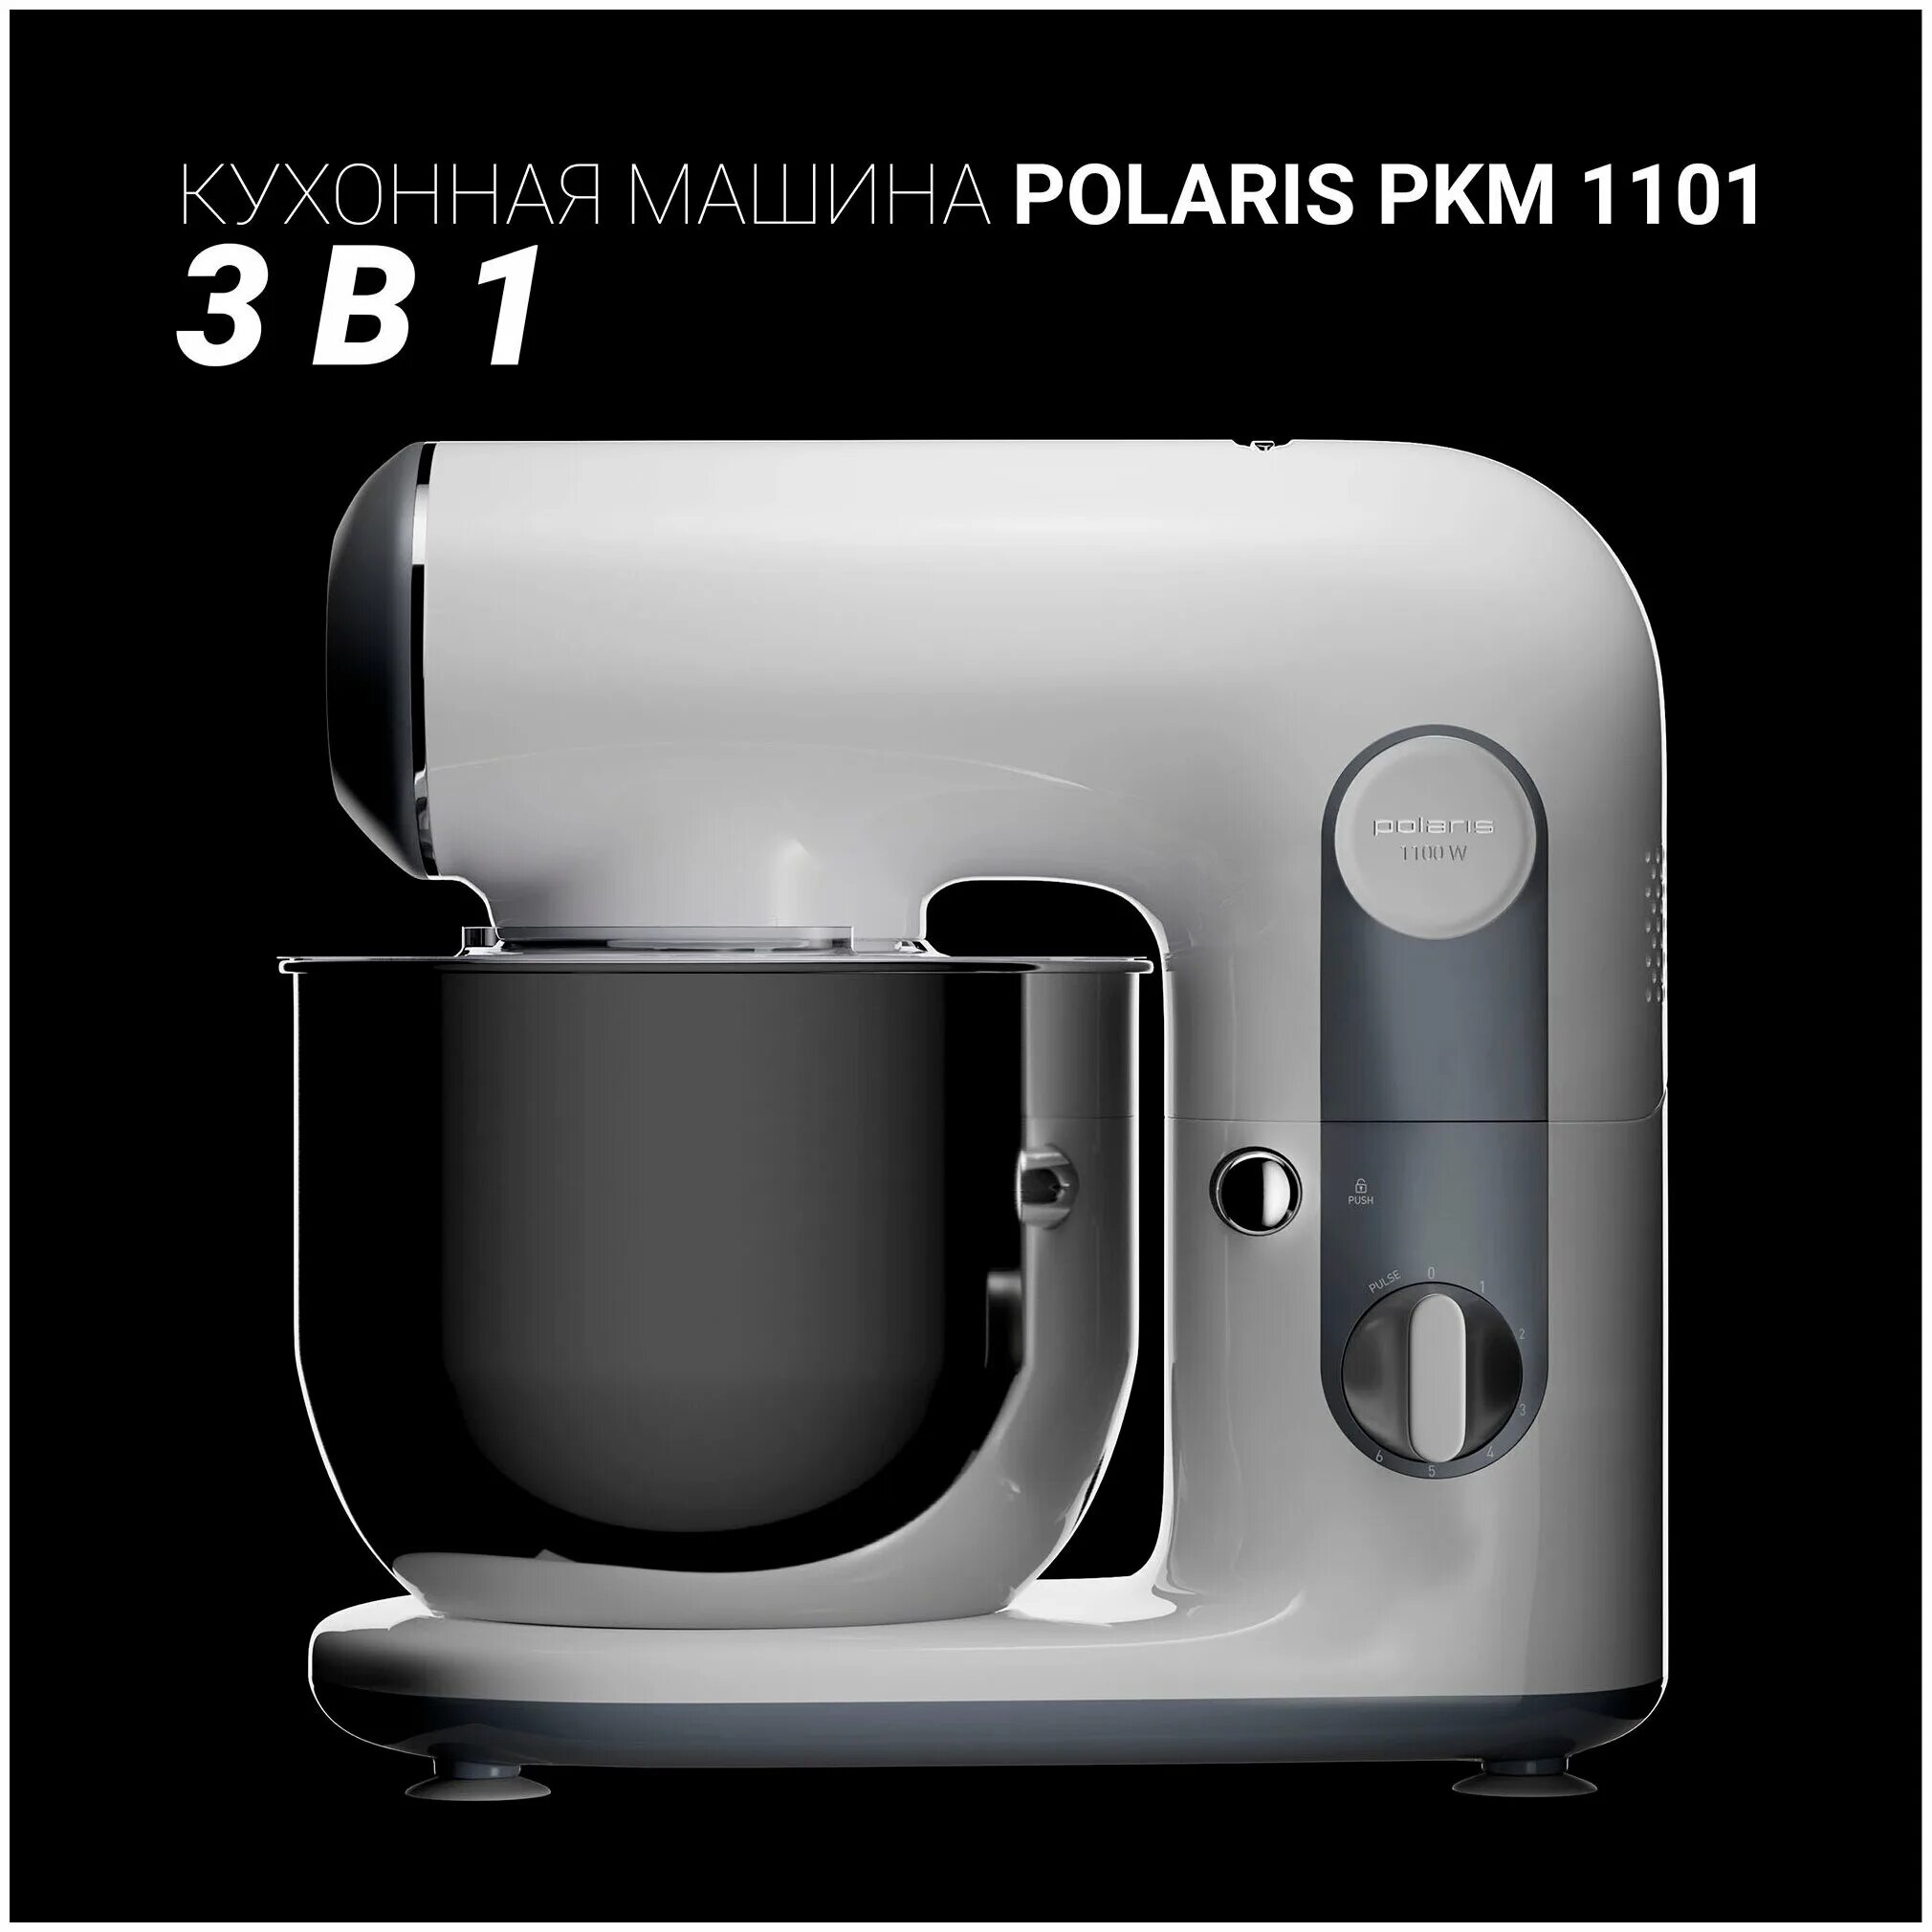 Кухонная машина polaris pkm. Кухонная машина PKM 1101 Polaris. Миксер планетарный Polaris PKM 1101. Планетарный миксер Поларис 1101. Кухонный комбайн Поларис 5 в 1.